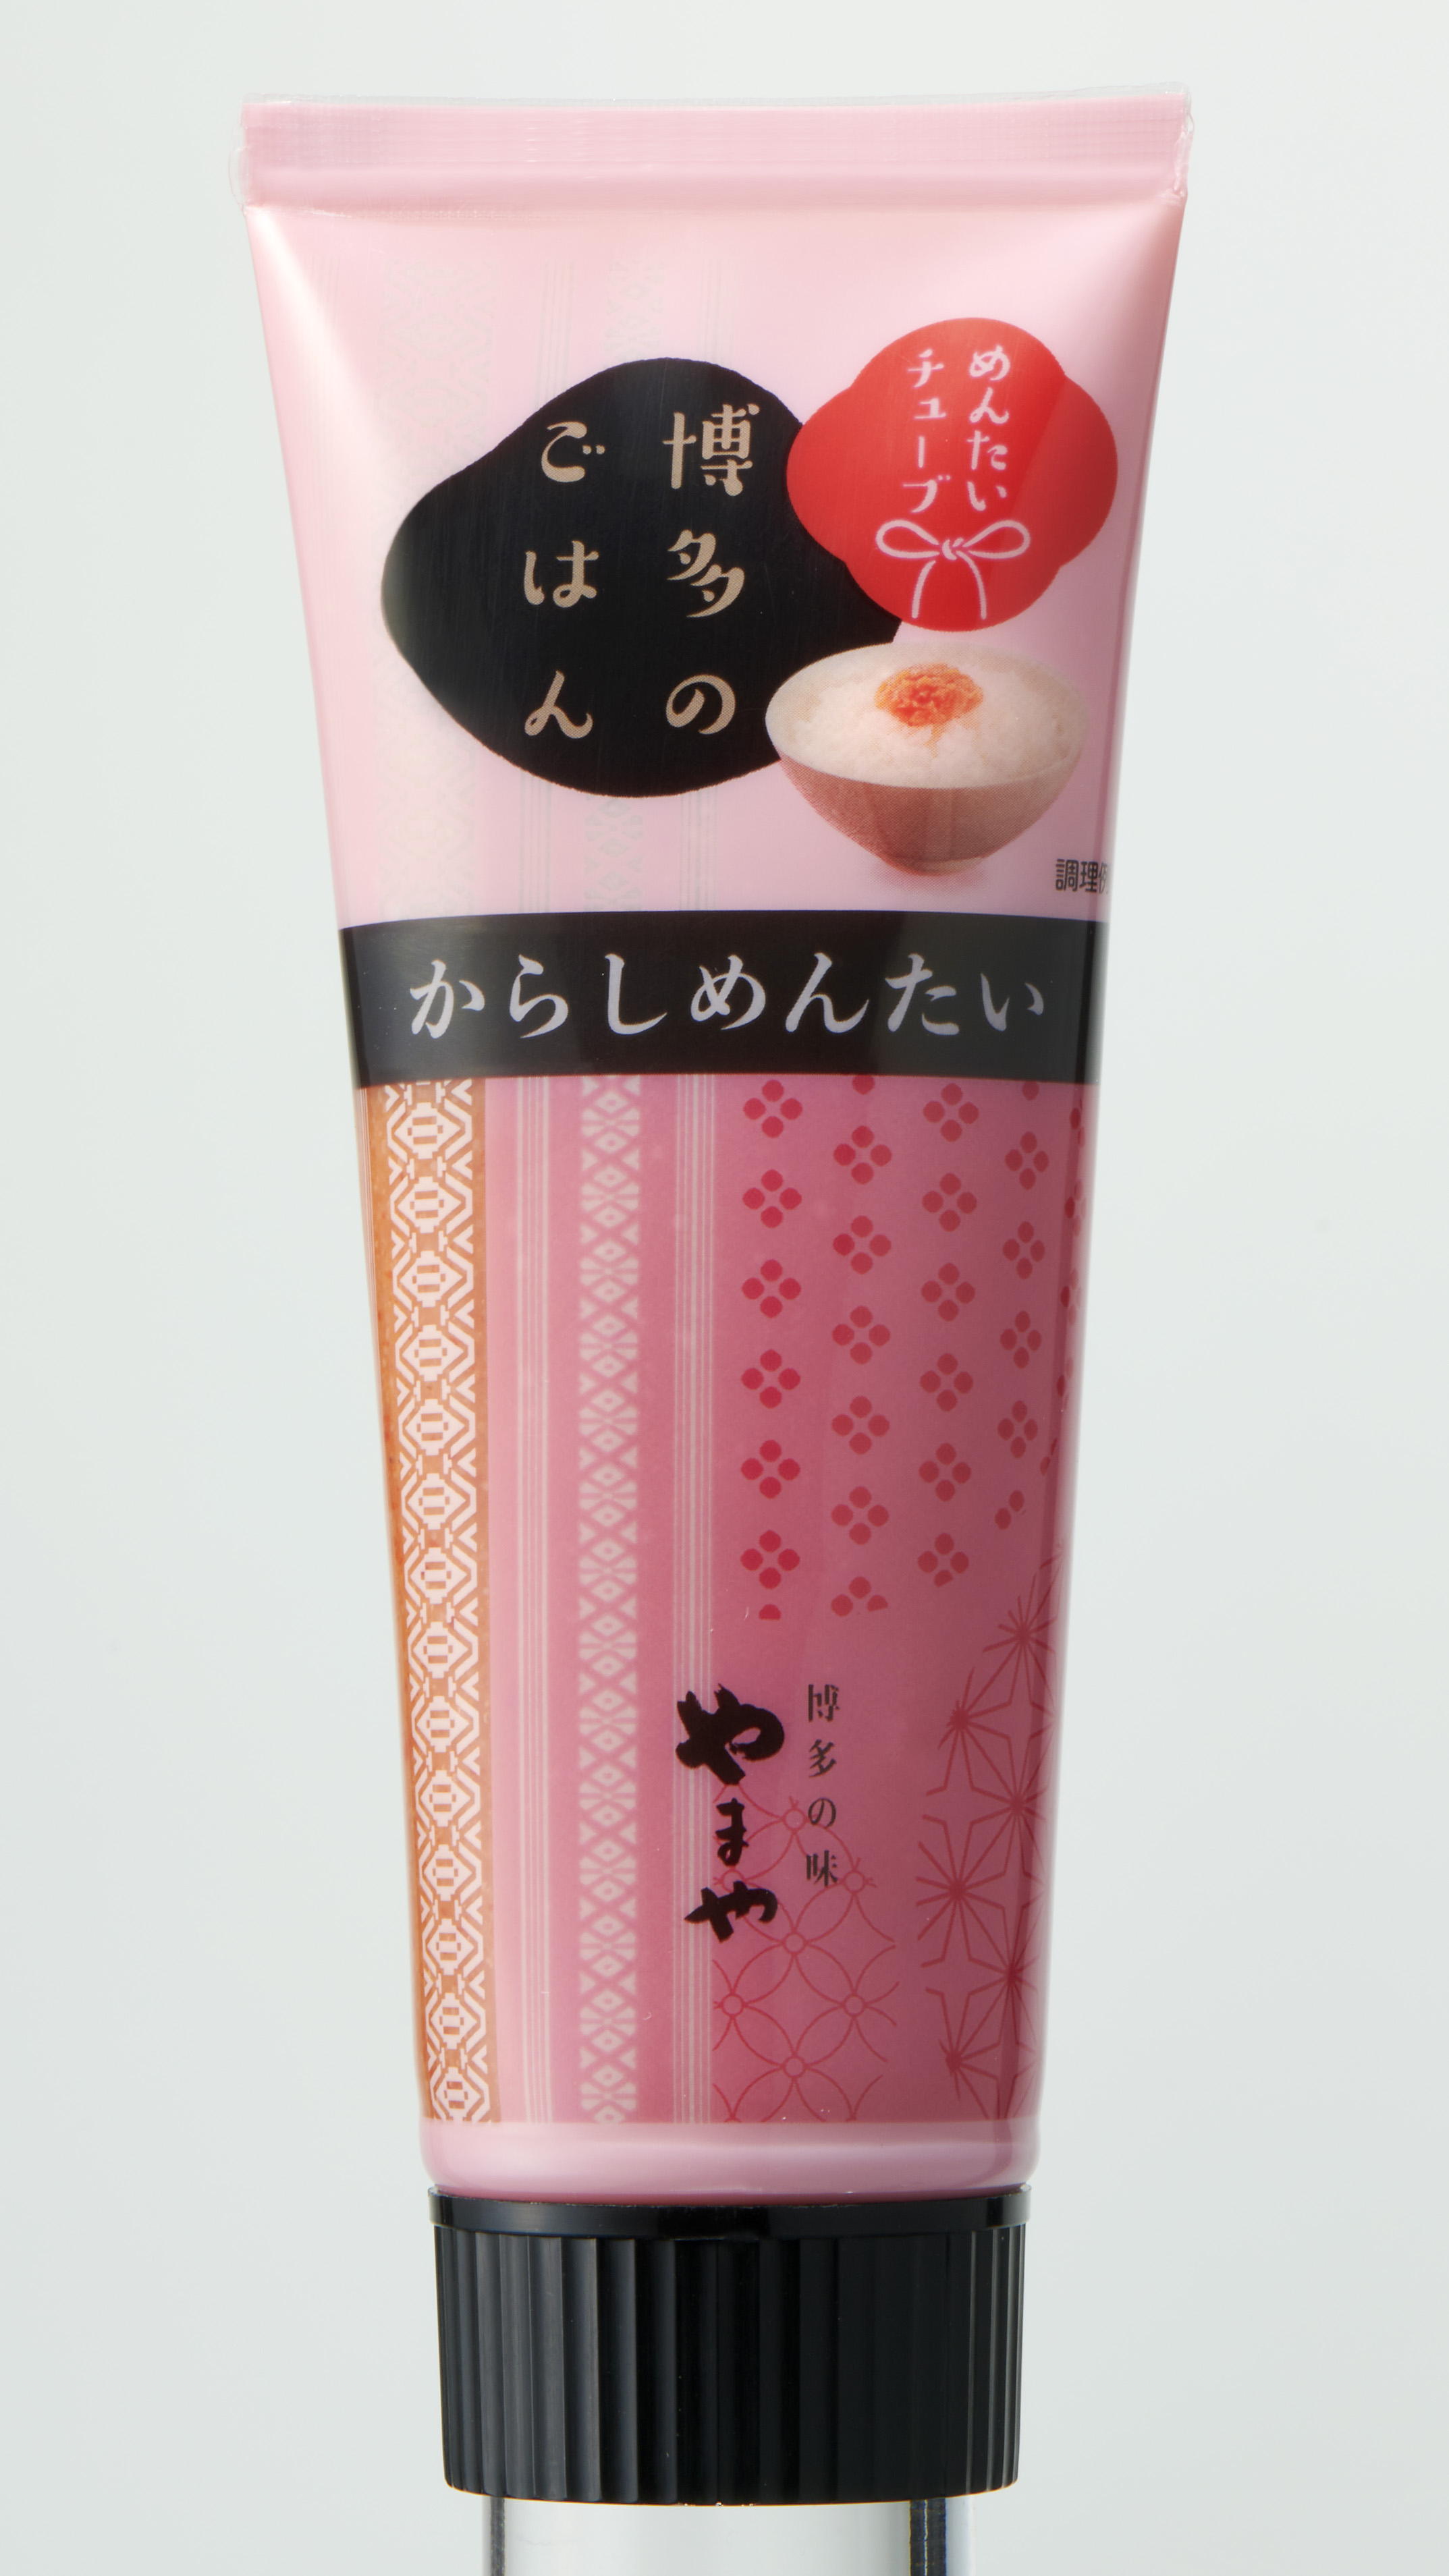 Hakata Gohan：Tubed Karashi-Mentaiko Condiment